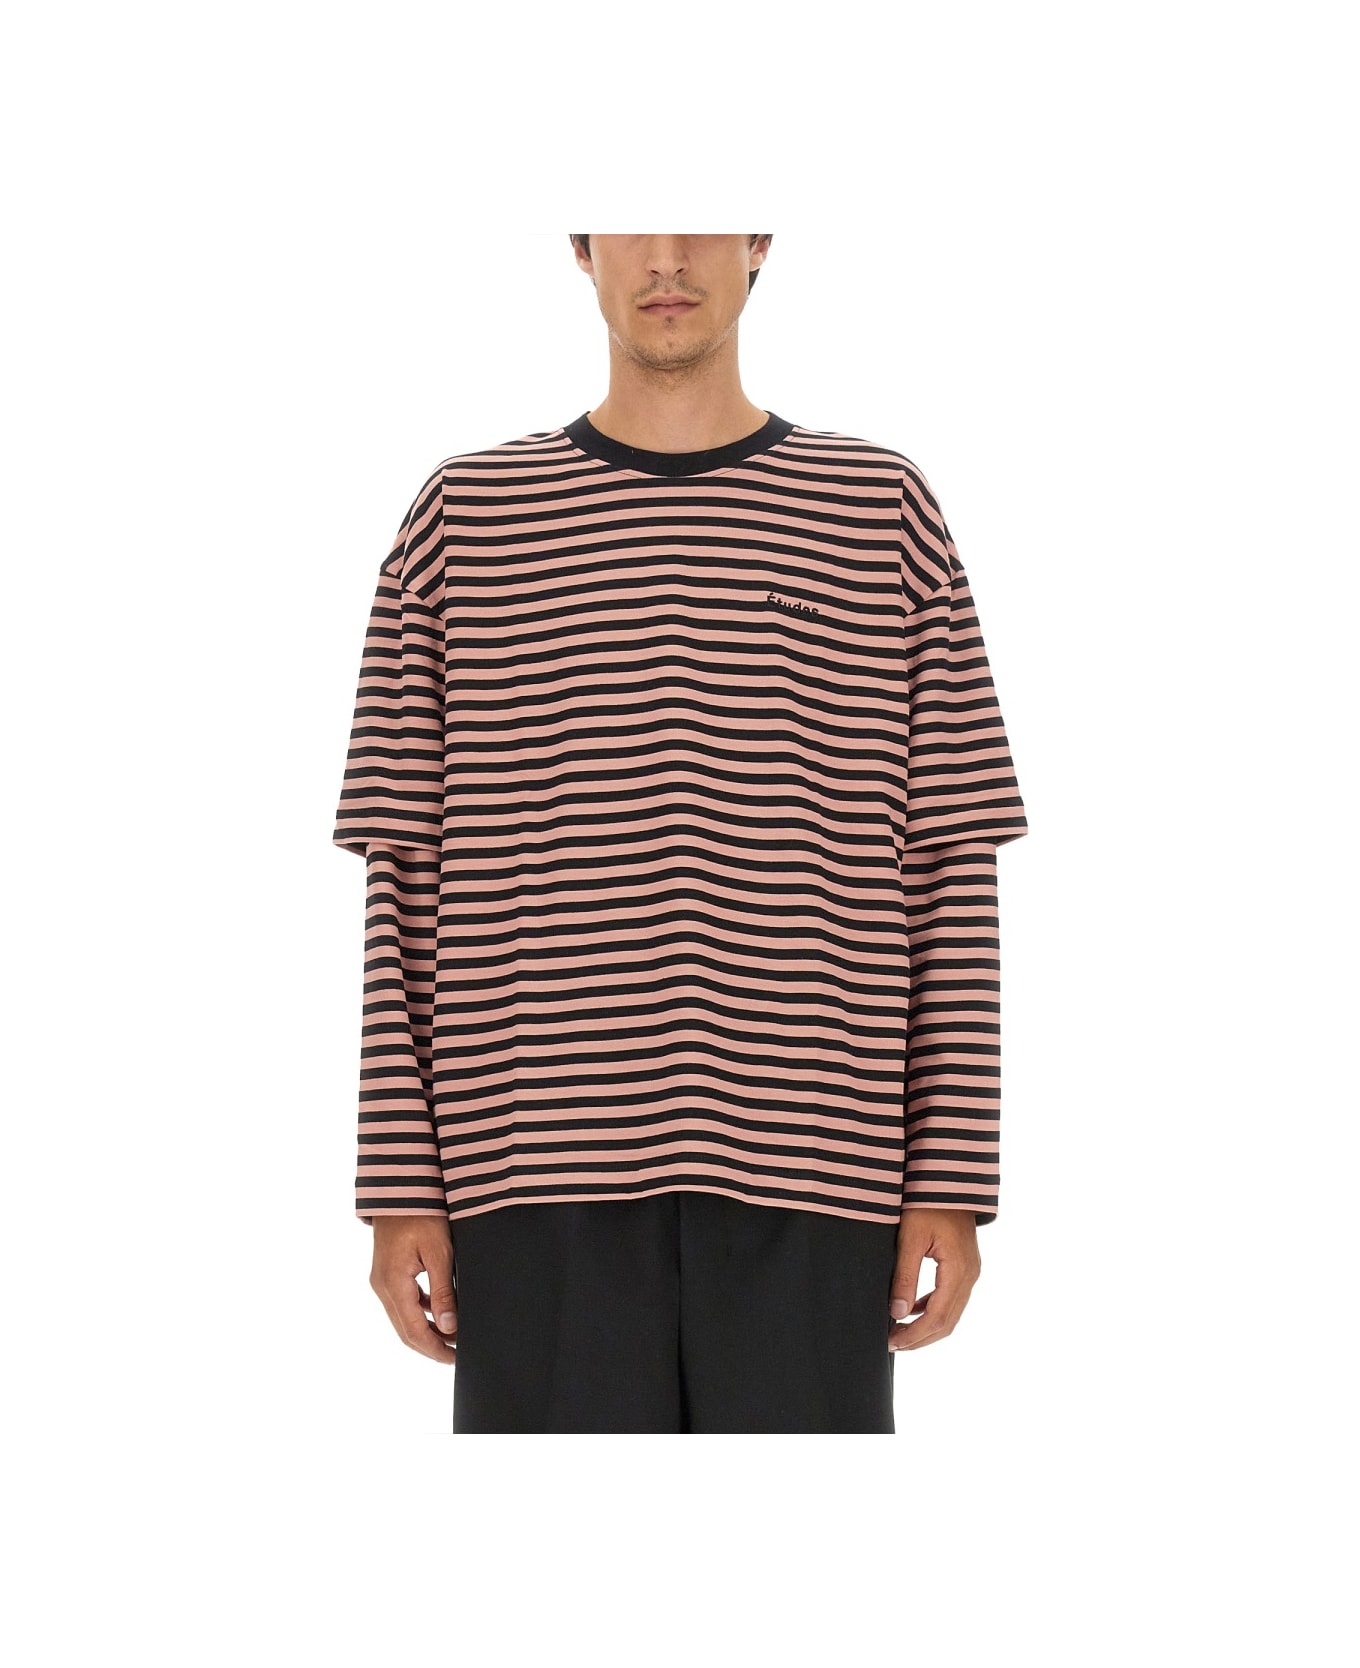 Études T-shirt With Stripe Pattern - MULTICOLOUR